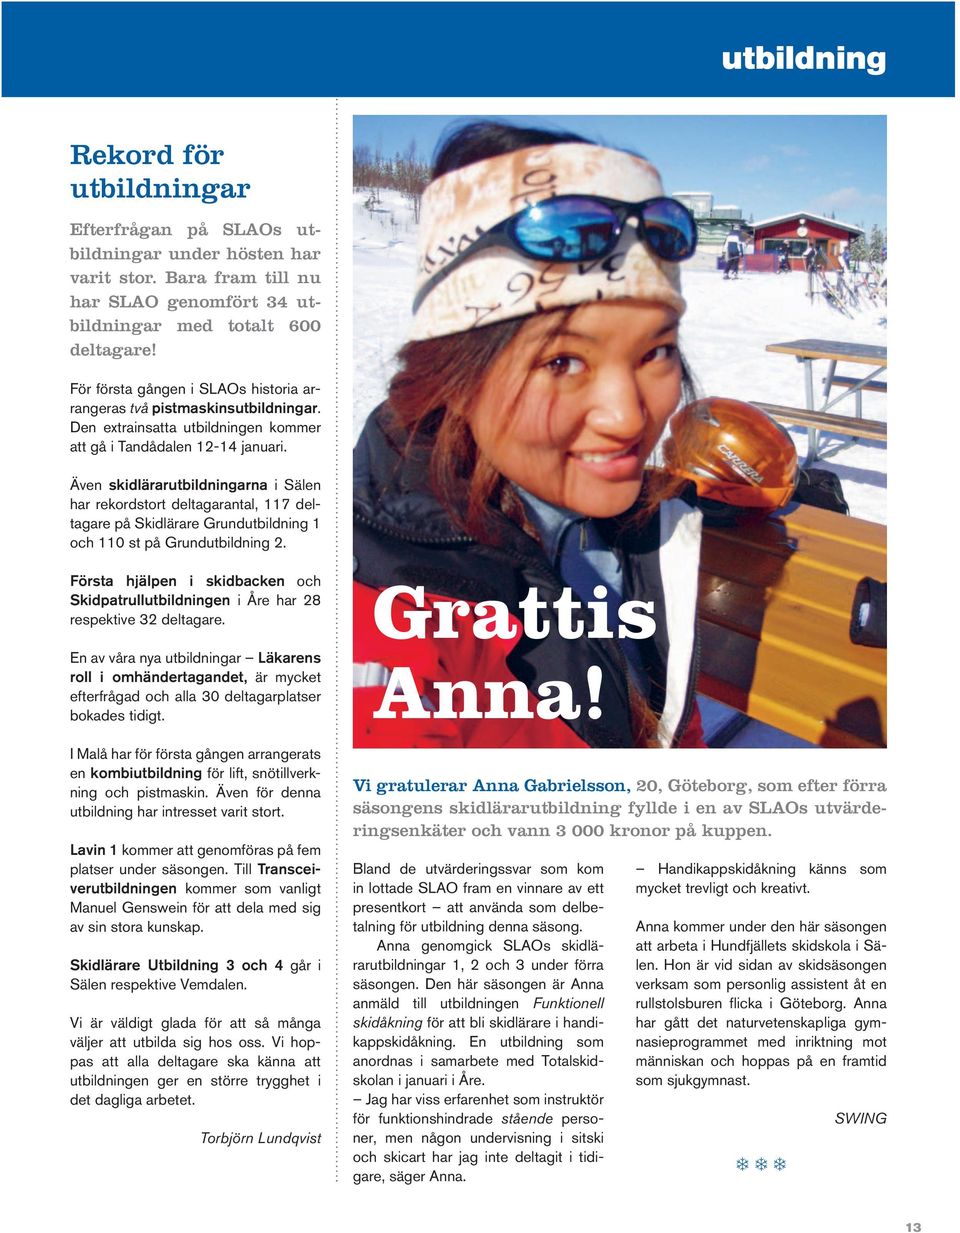 Även skidlärarutbildningarna i Sälen har rekordstort deltagarantal, 117 deltagare på Skidlärare Grundutbildning 1 och 110 st på Grundutbildning 2.